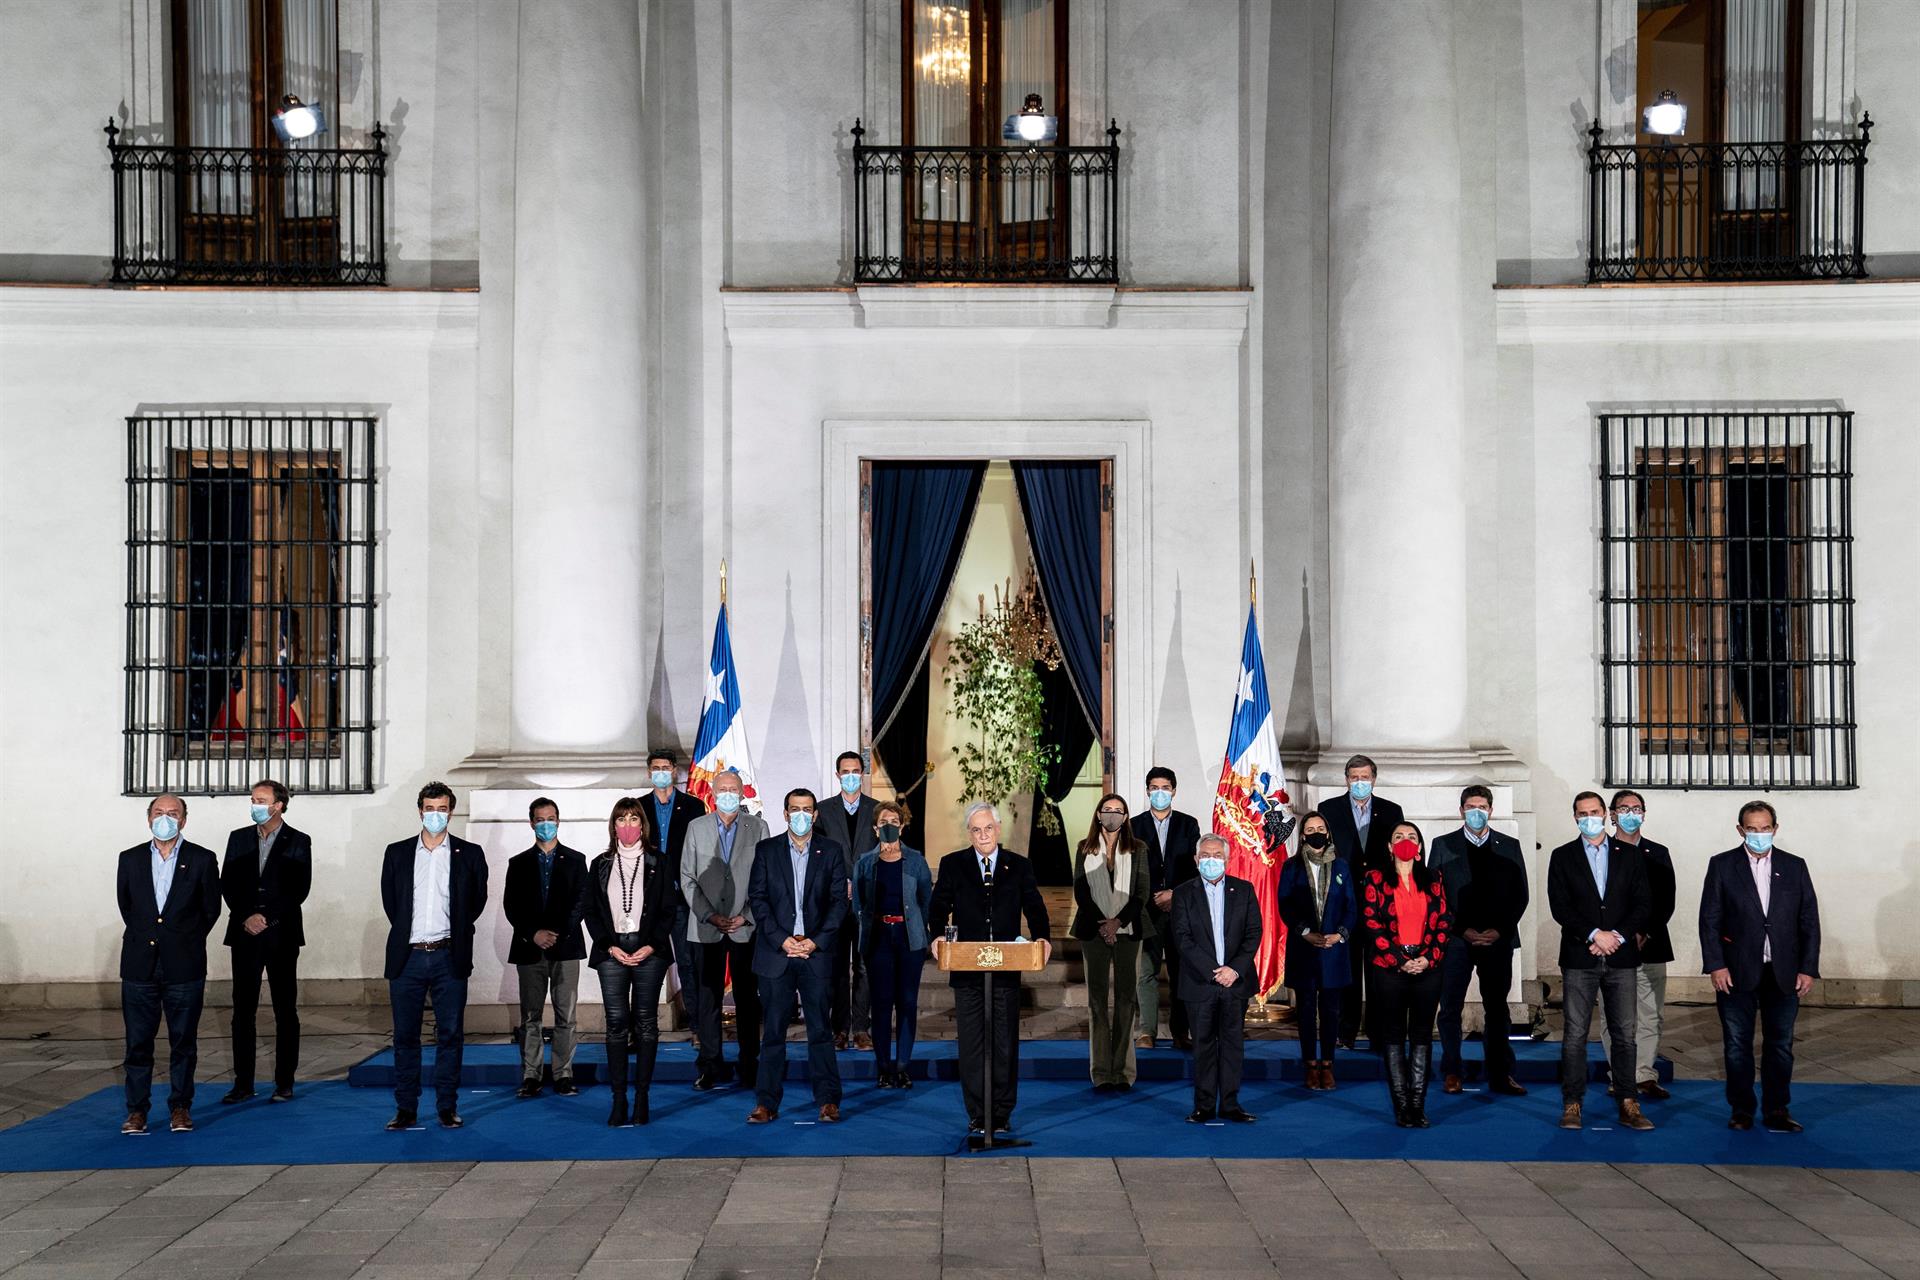 O presidente do Chile, Sebastián Piñera, se dirige à nação após eleições constituintes